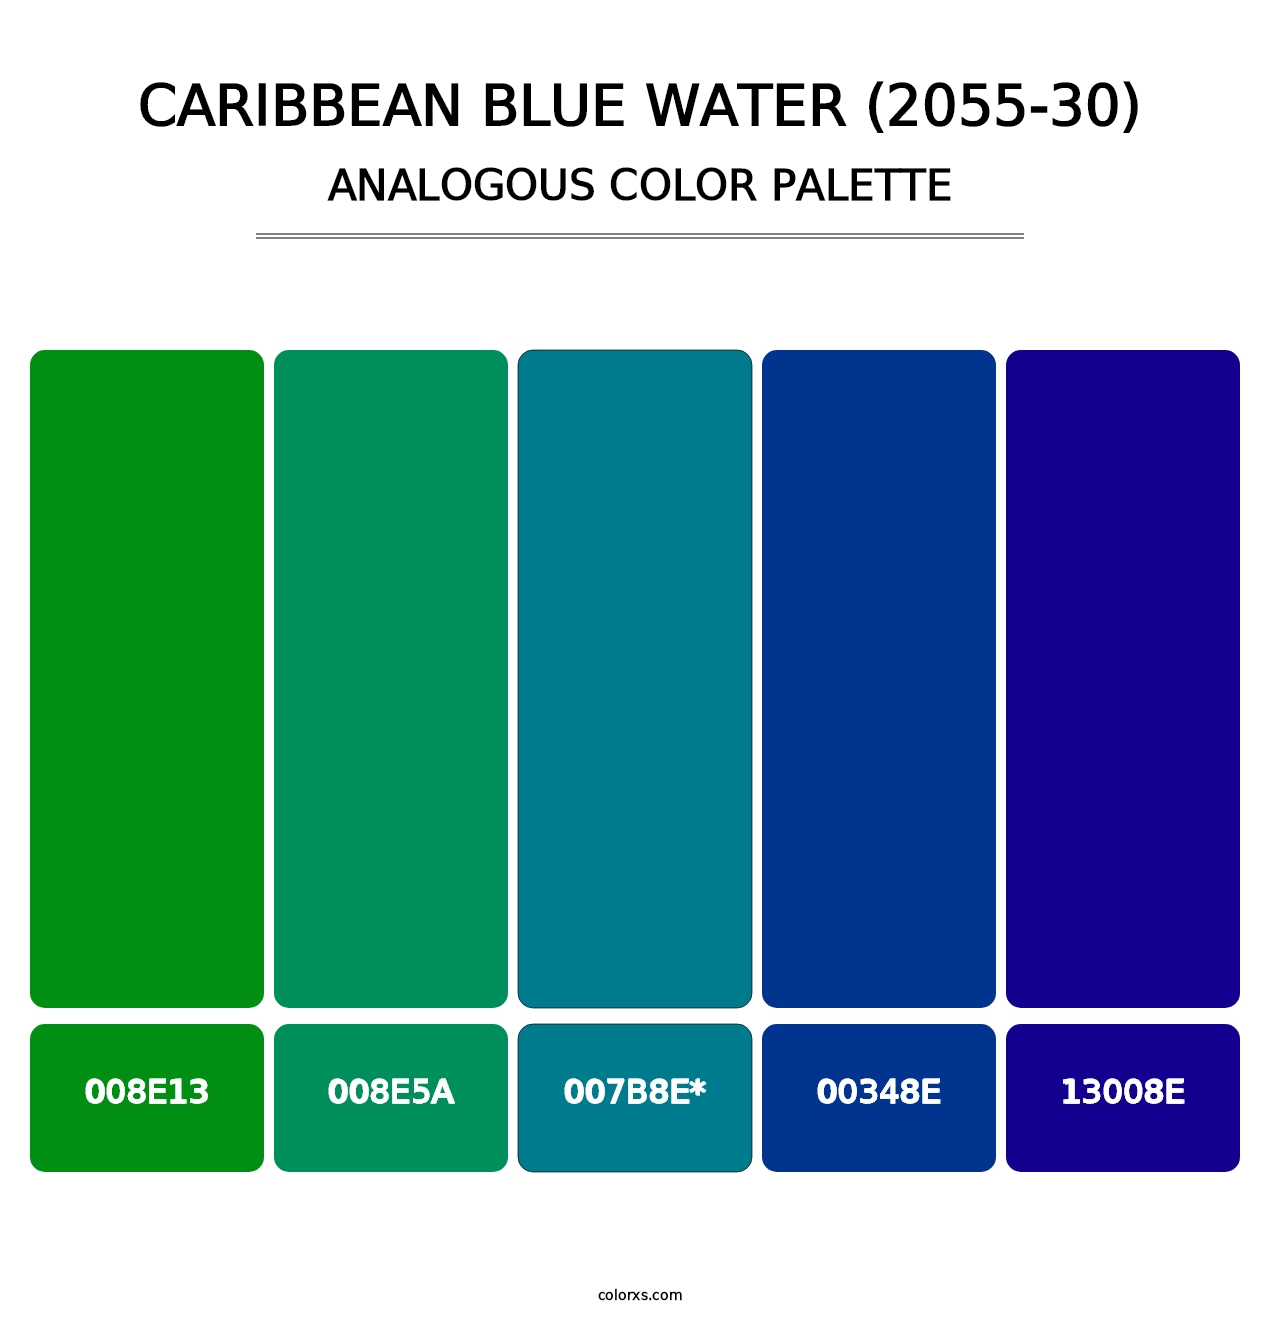 Caribbean Blue Water (2055-30) - Analogous Color Palette